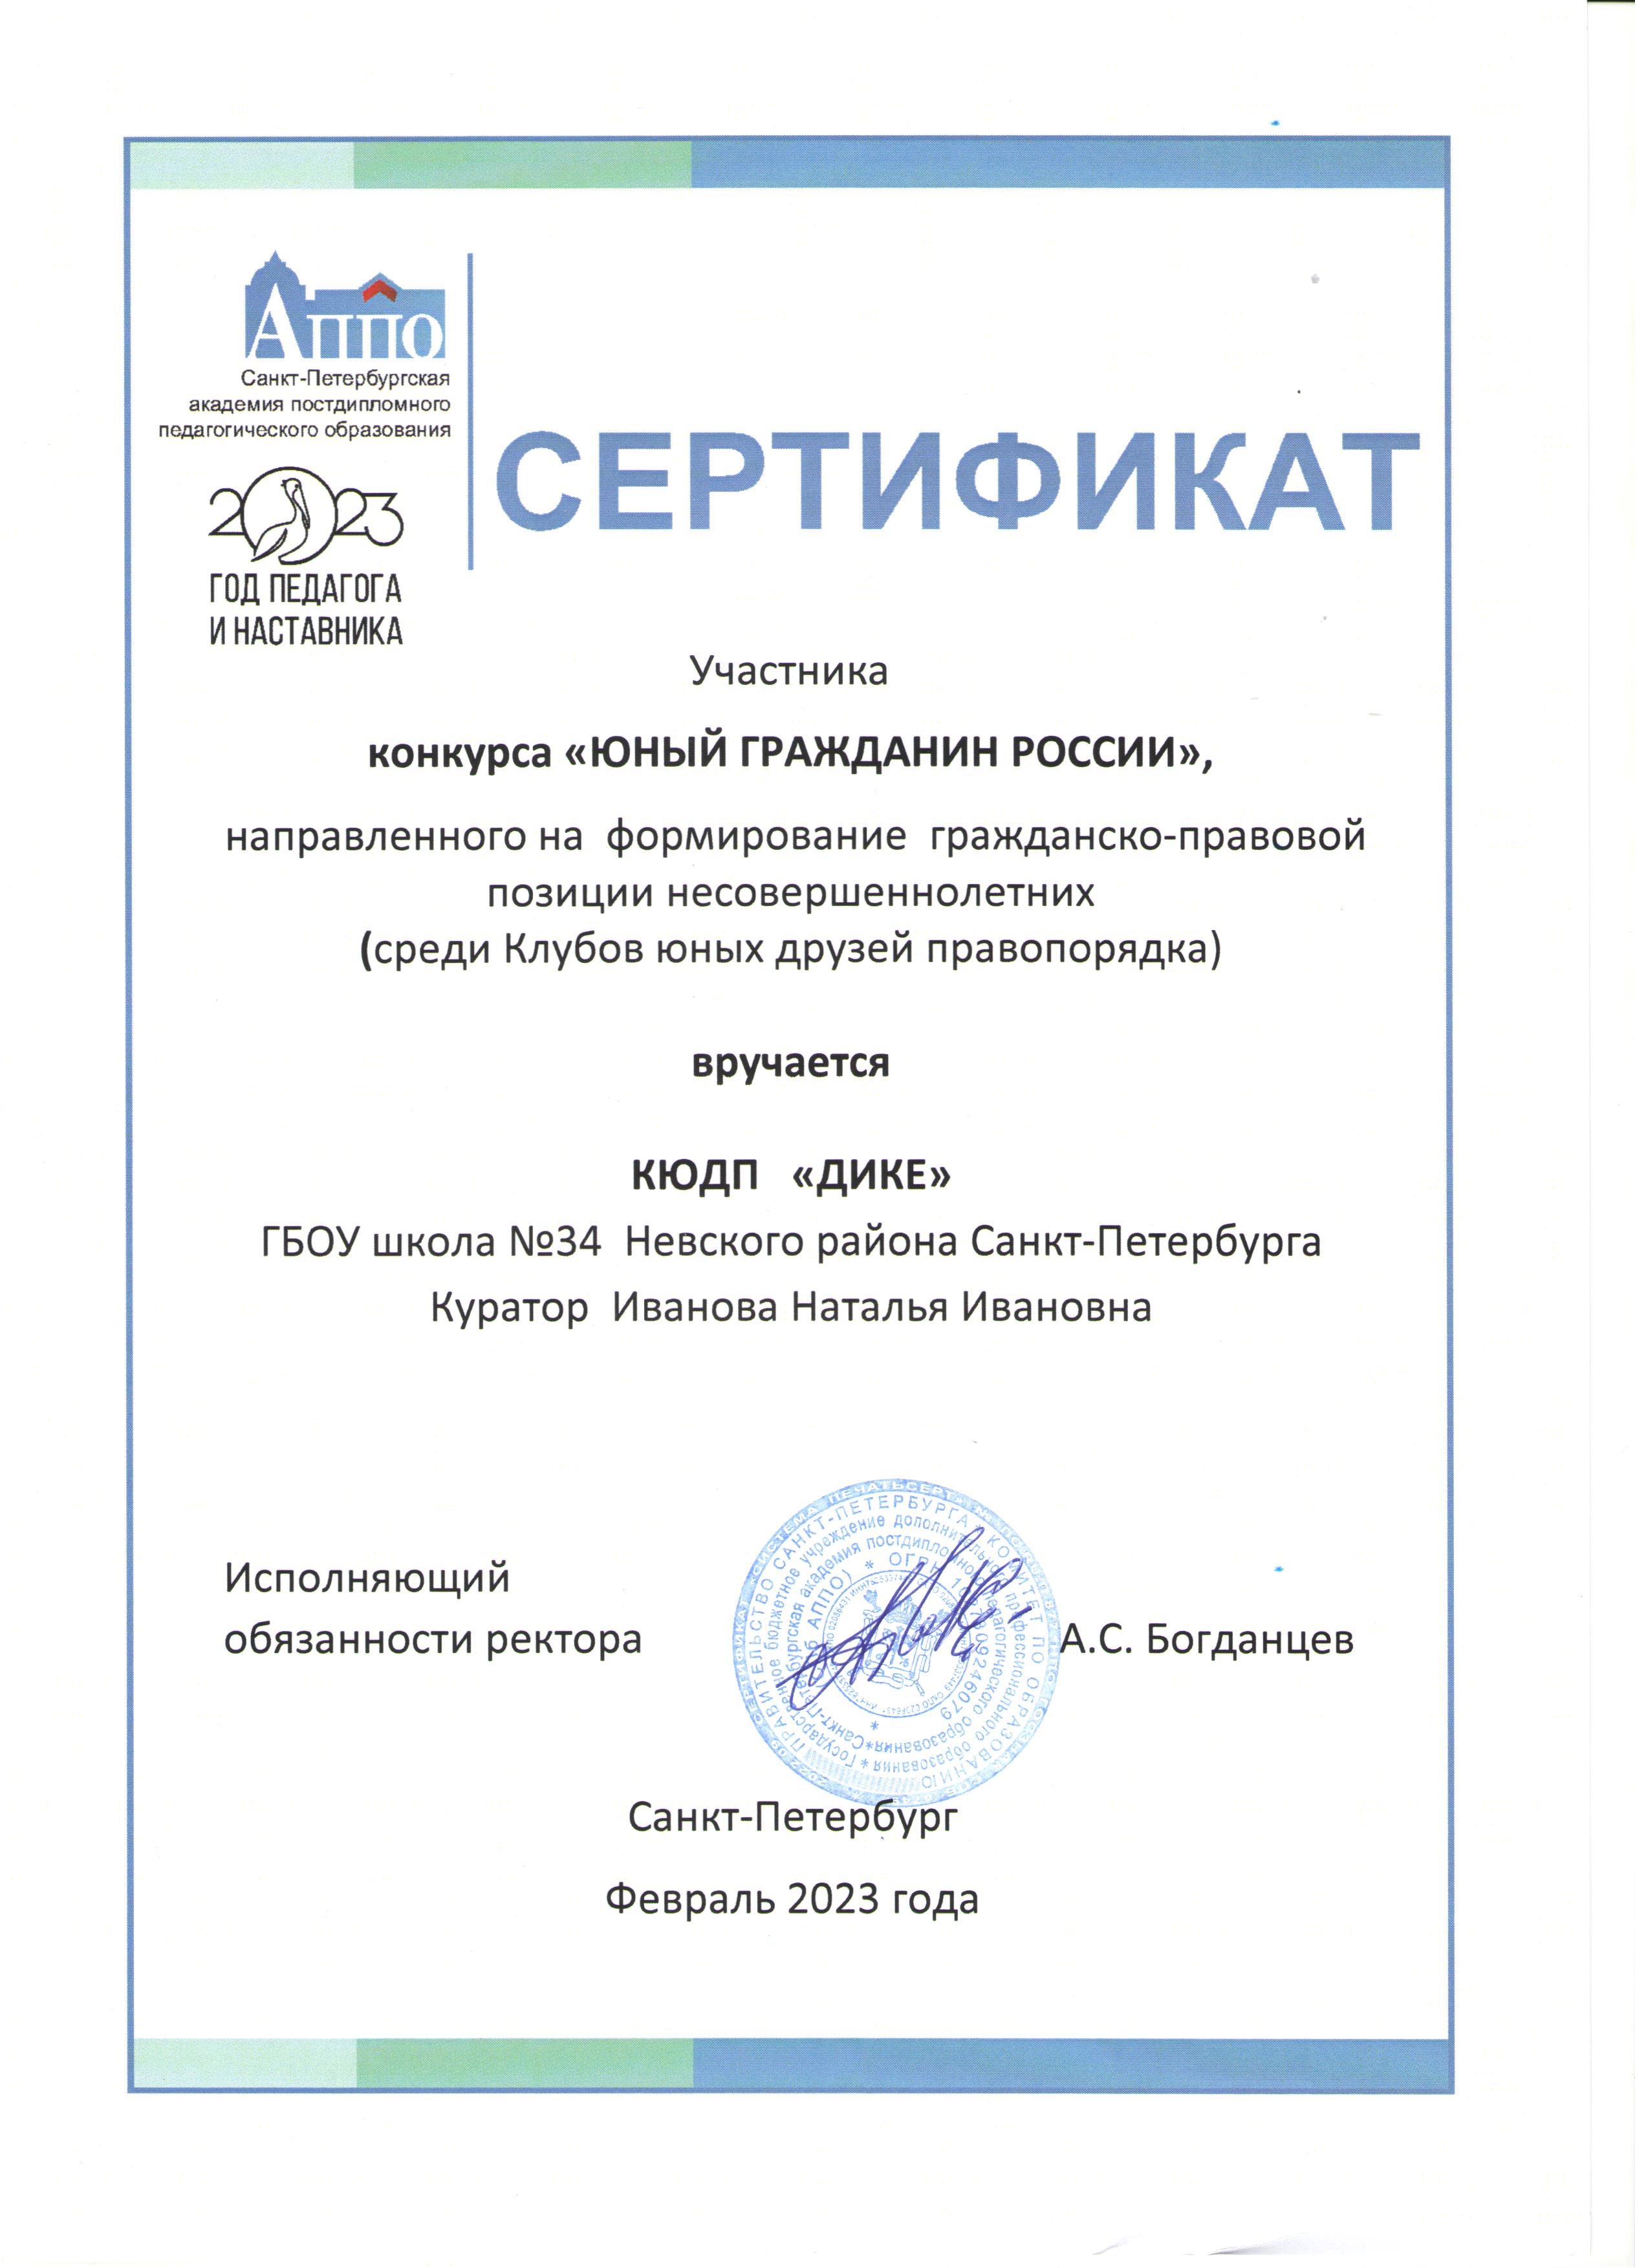 Сертификат участника КЮДП 2023